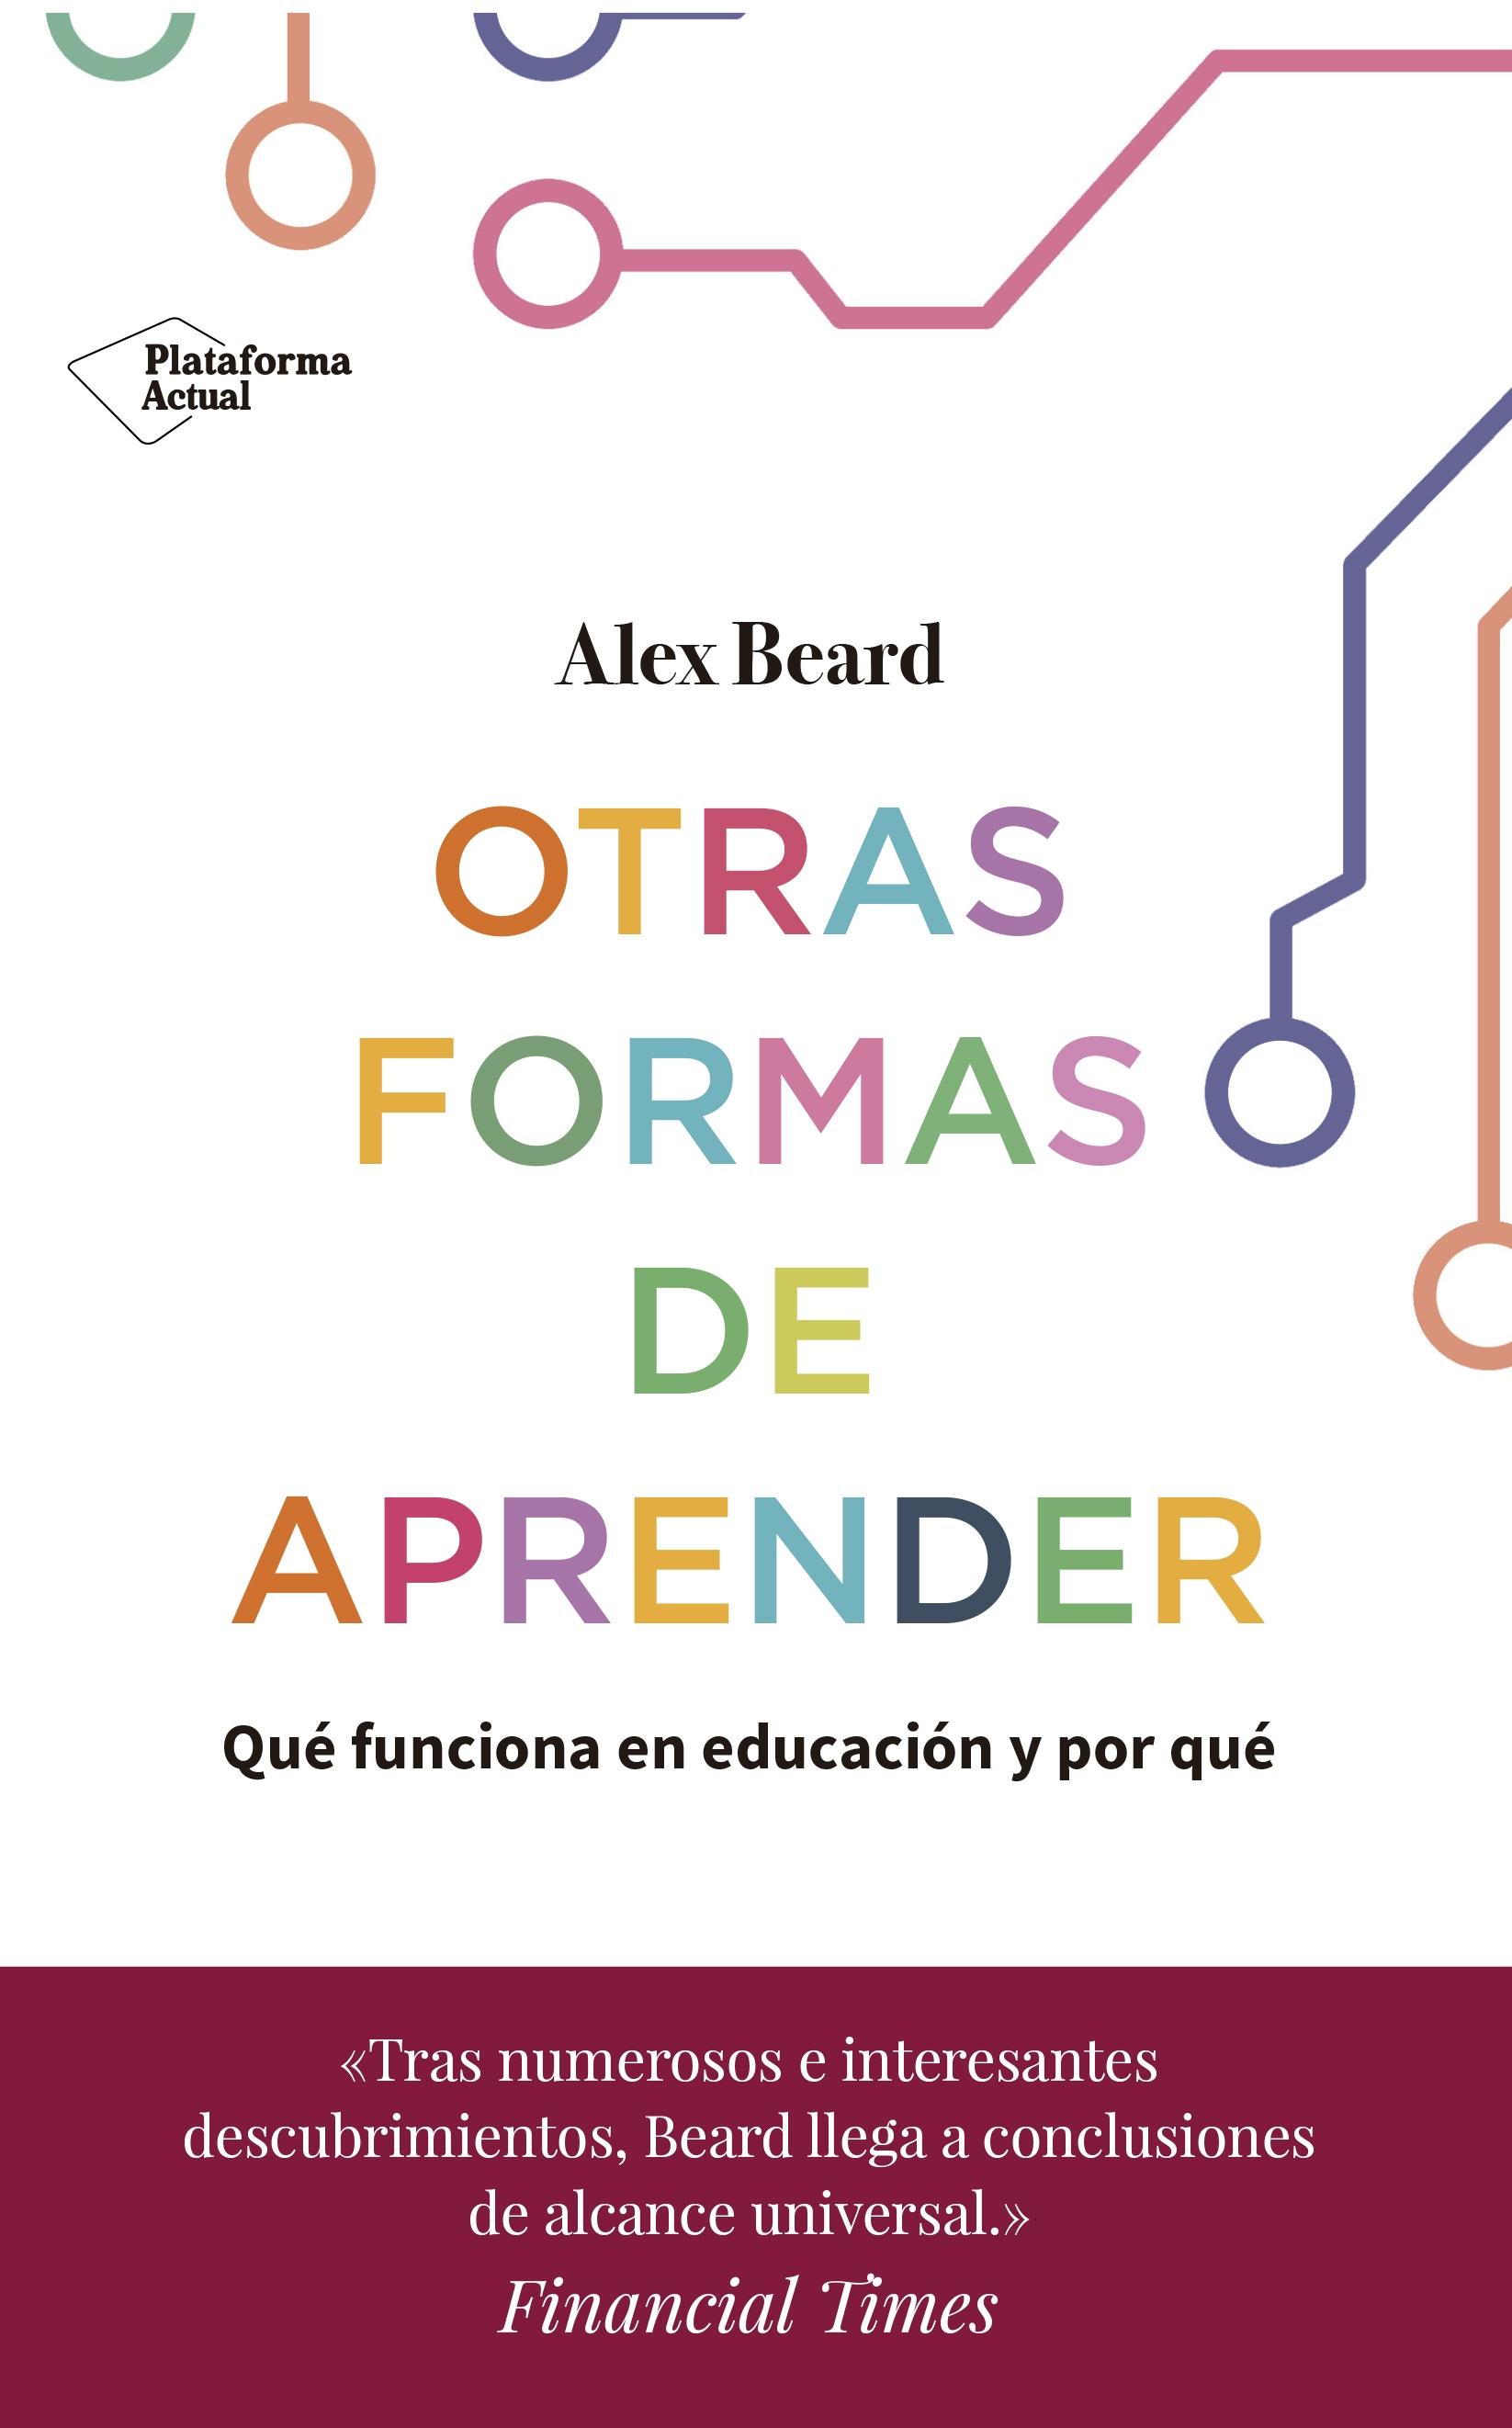 OTRAS FORMAS DE APRENDER "Qué funciona en educación y por qué"